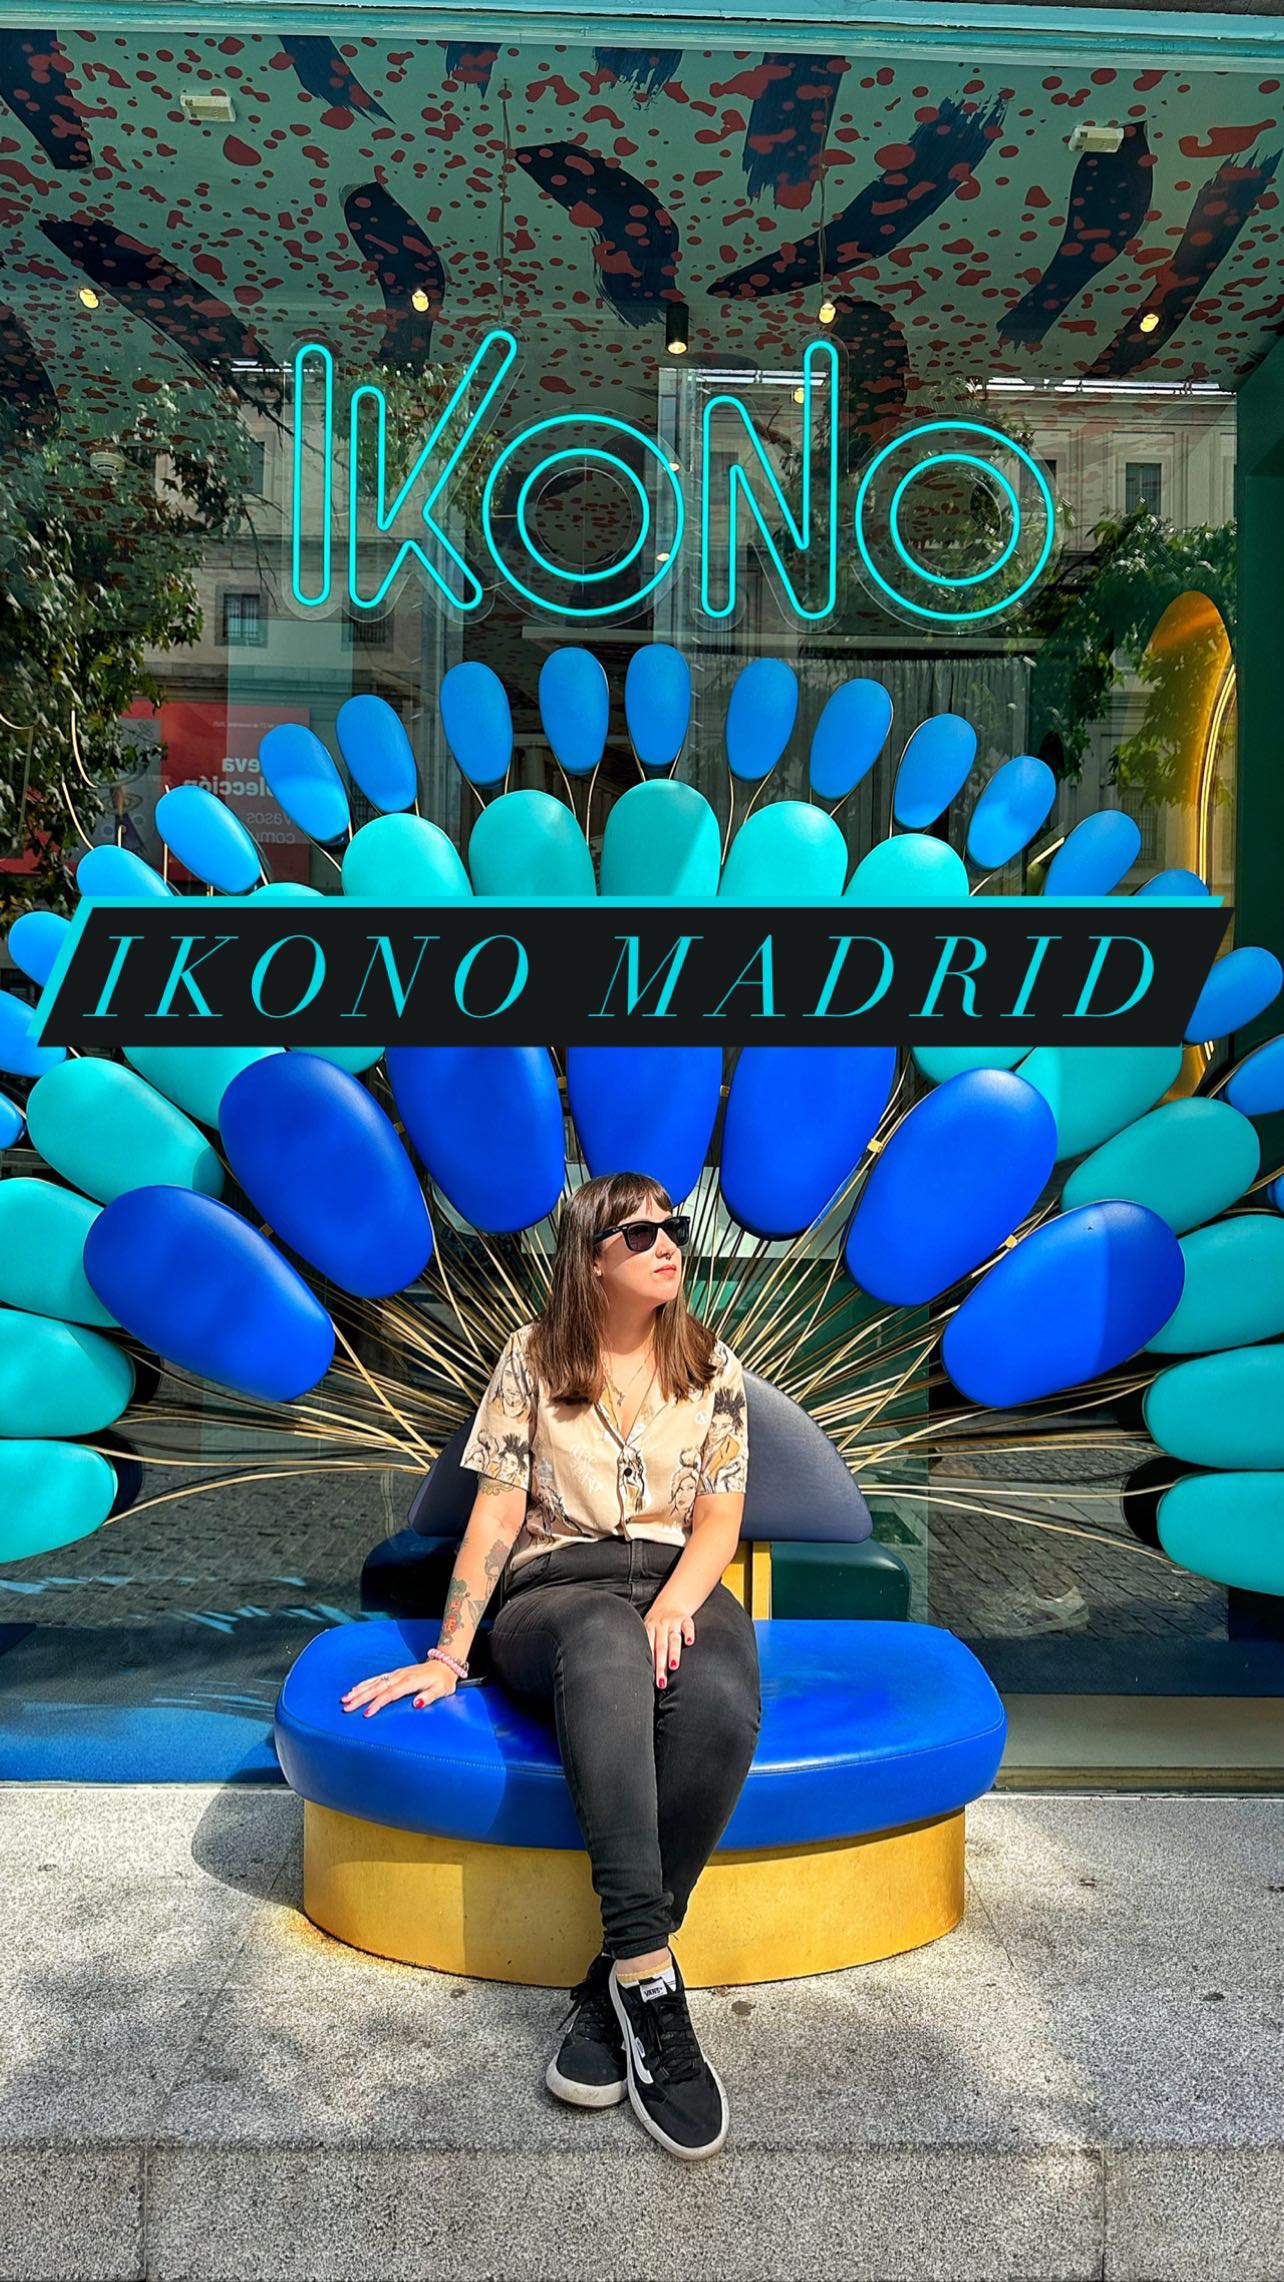 .
✨Ikono✨
.
En nuestra última visita a Madrid por fin visitamos Ikono gracias a @getyourguide . Ikono es una exposición inmersiva y sensorial única en pleno centro de Madrid.
.
Con muchas oportunidades para hacer fotos ‘instagrameables’, una enorme piscina de bolas, ¡incluso un bosque de bambú!
.
@getyourguidecommunity #getyourguidecommunity #ad